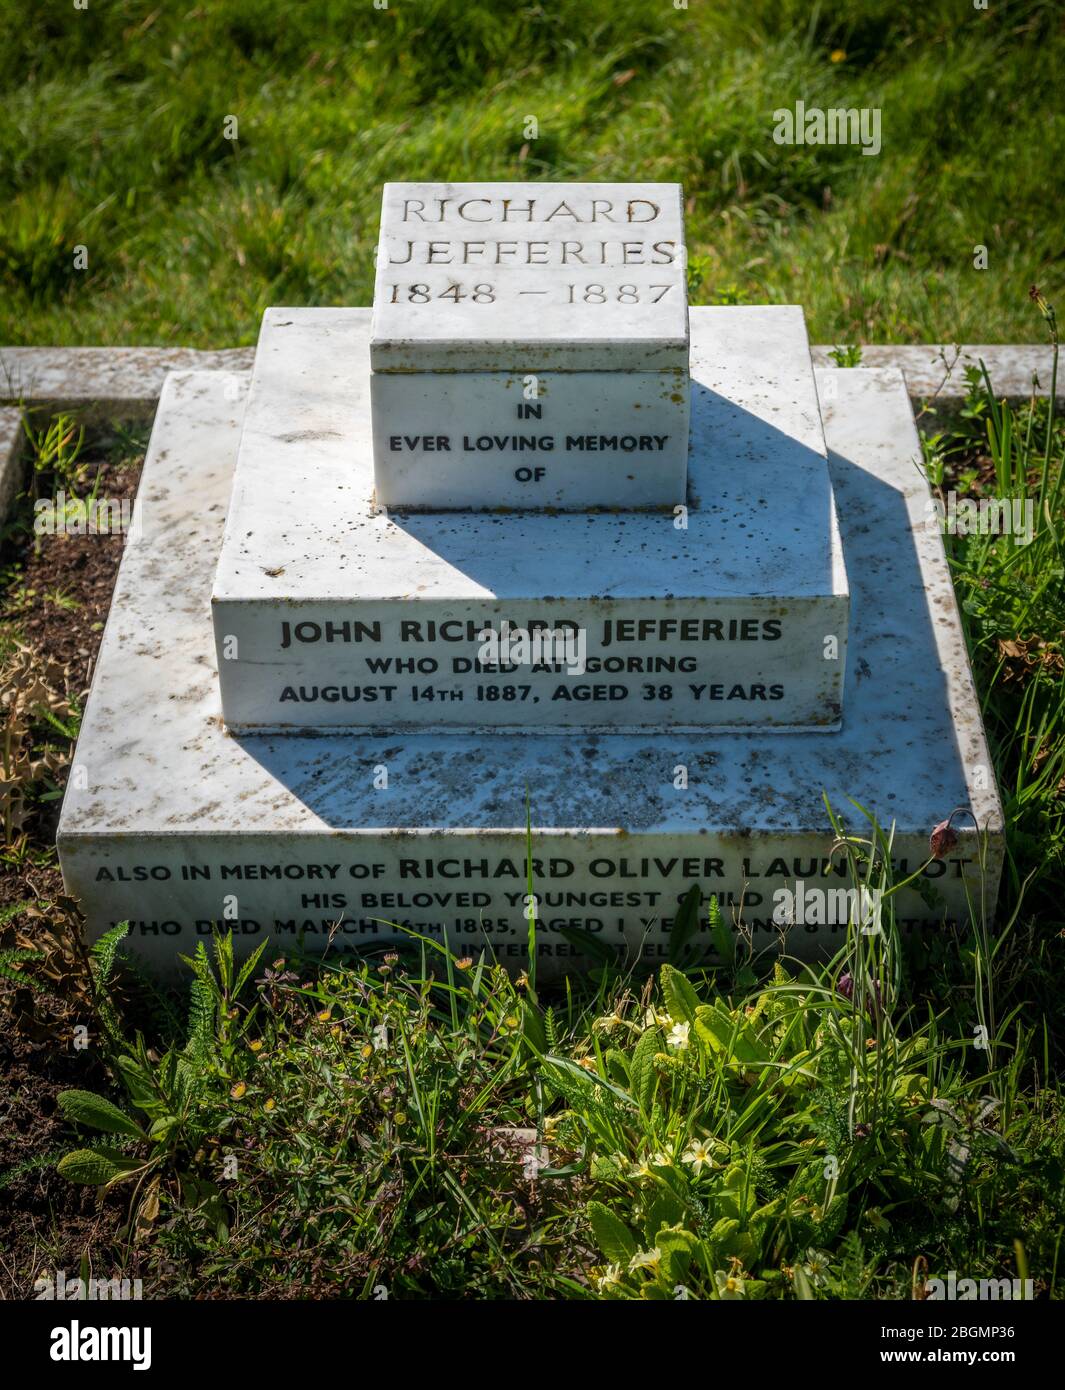 La tombe du romancier victorien et naturaliste Richard Jefferies au cimetière Broadwater, Worthing, West Sussex, Royaume-Uni Banque D'Images